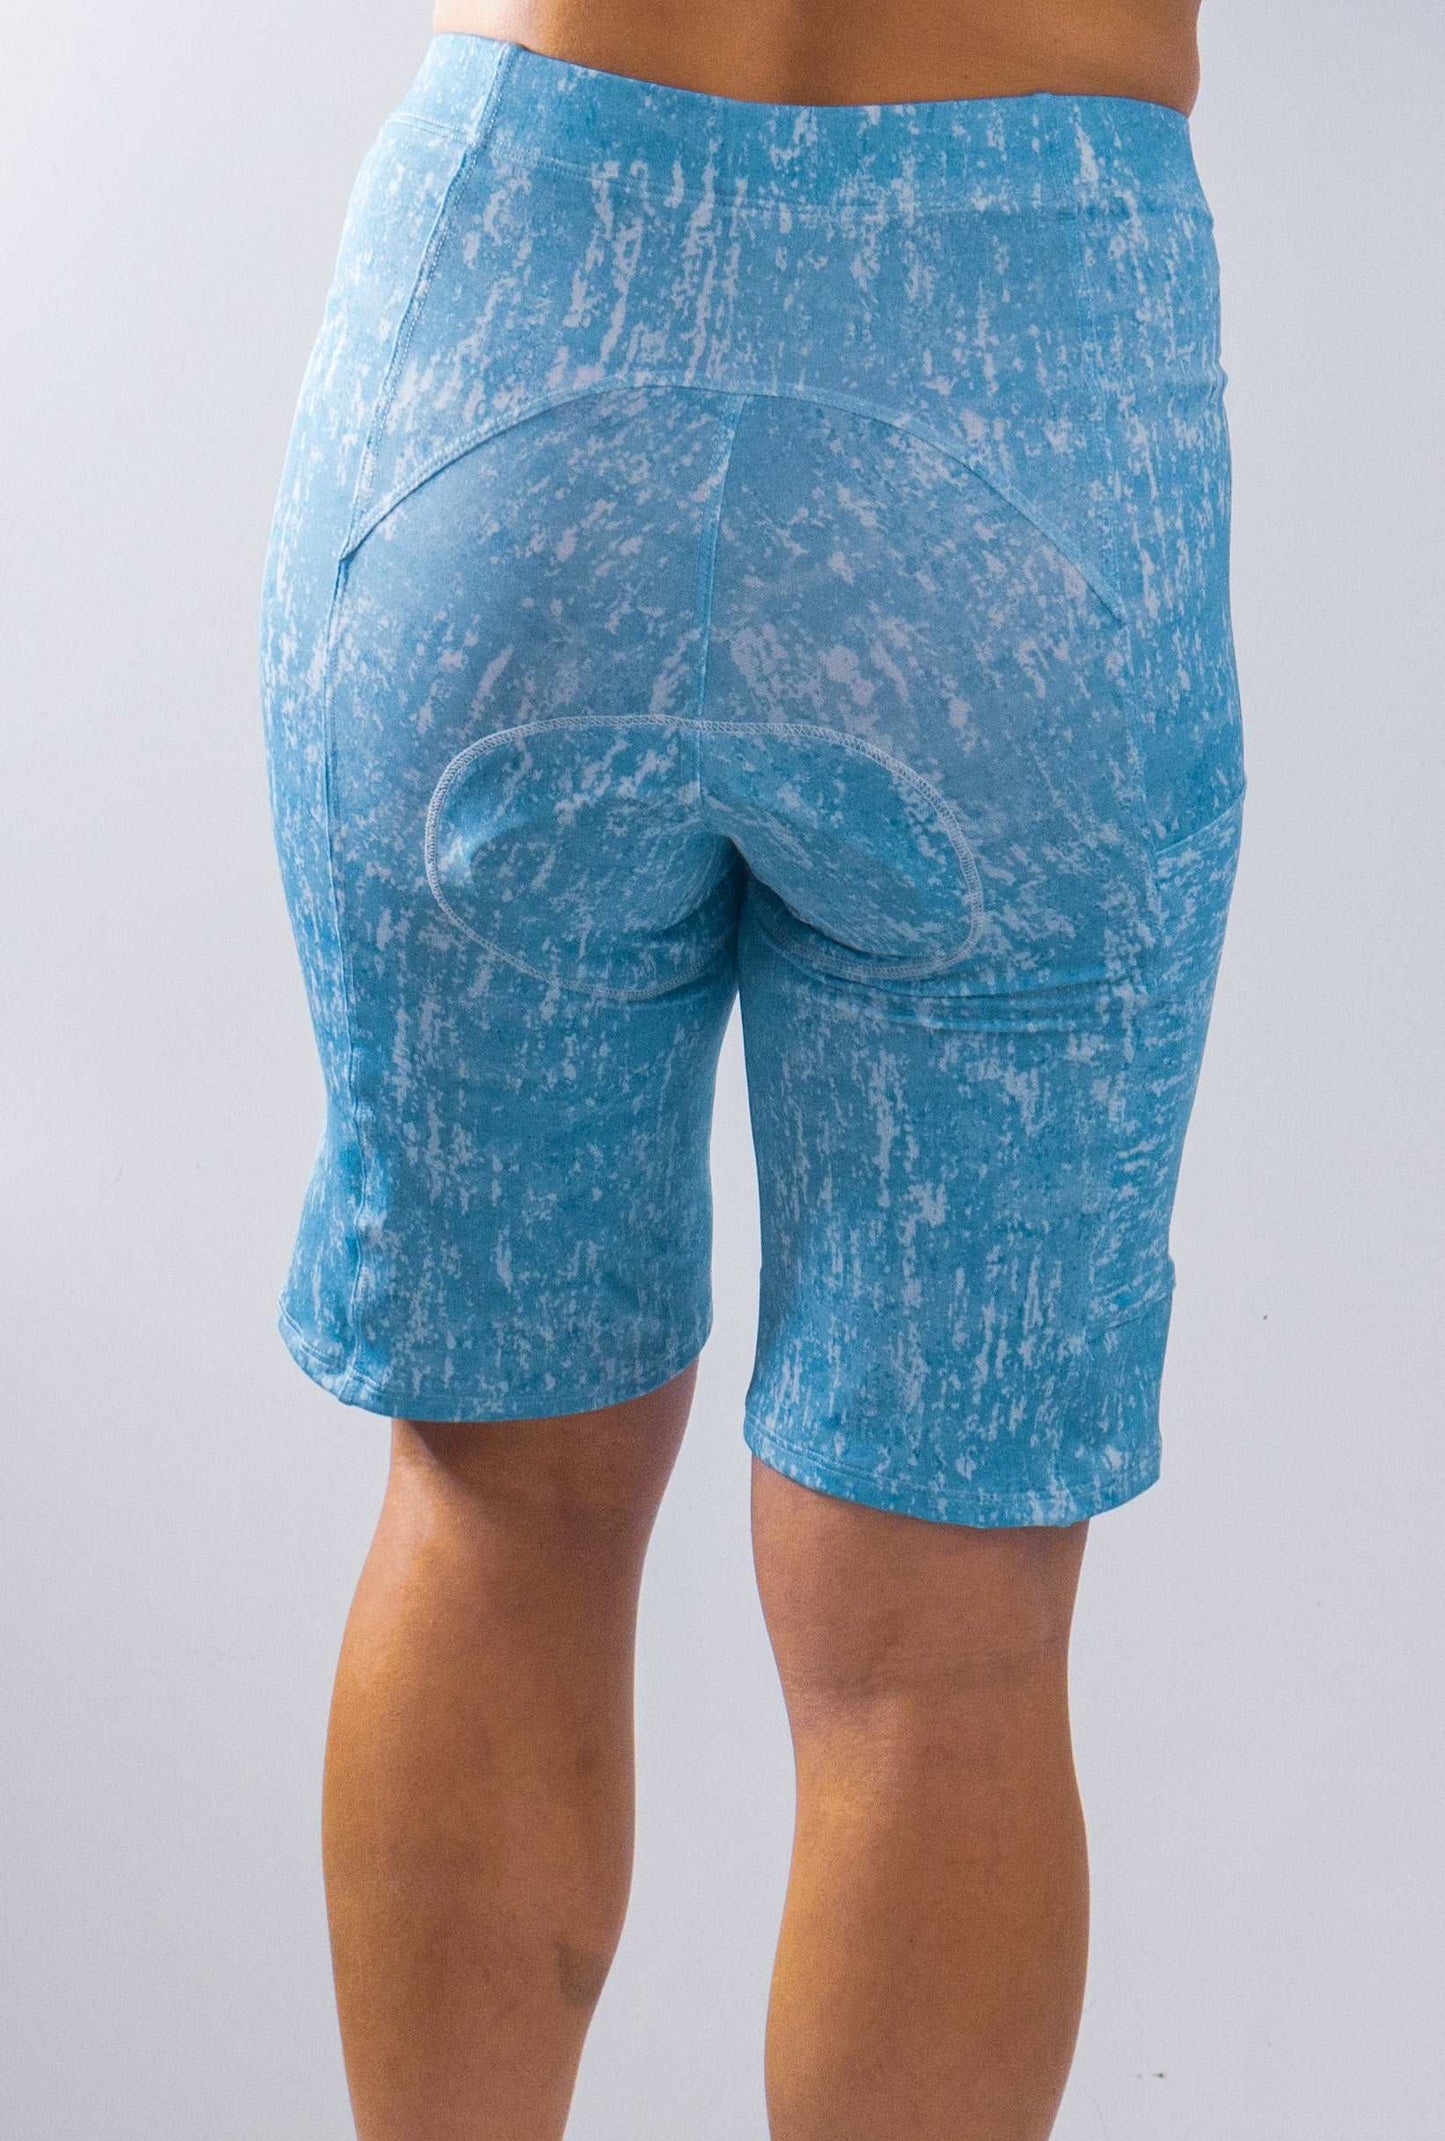 Cycling Shorts Blue Sky - Moxie Cycling:  Bike Jerseys, Bike Shorts & Bike Pants Made for Women